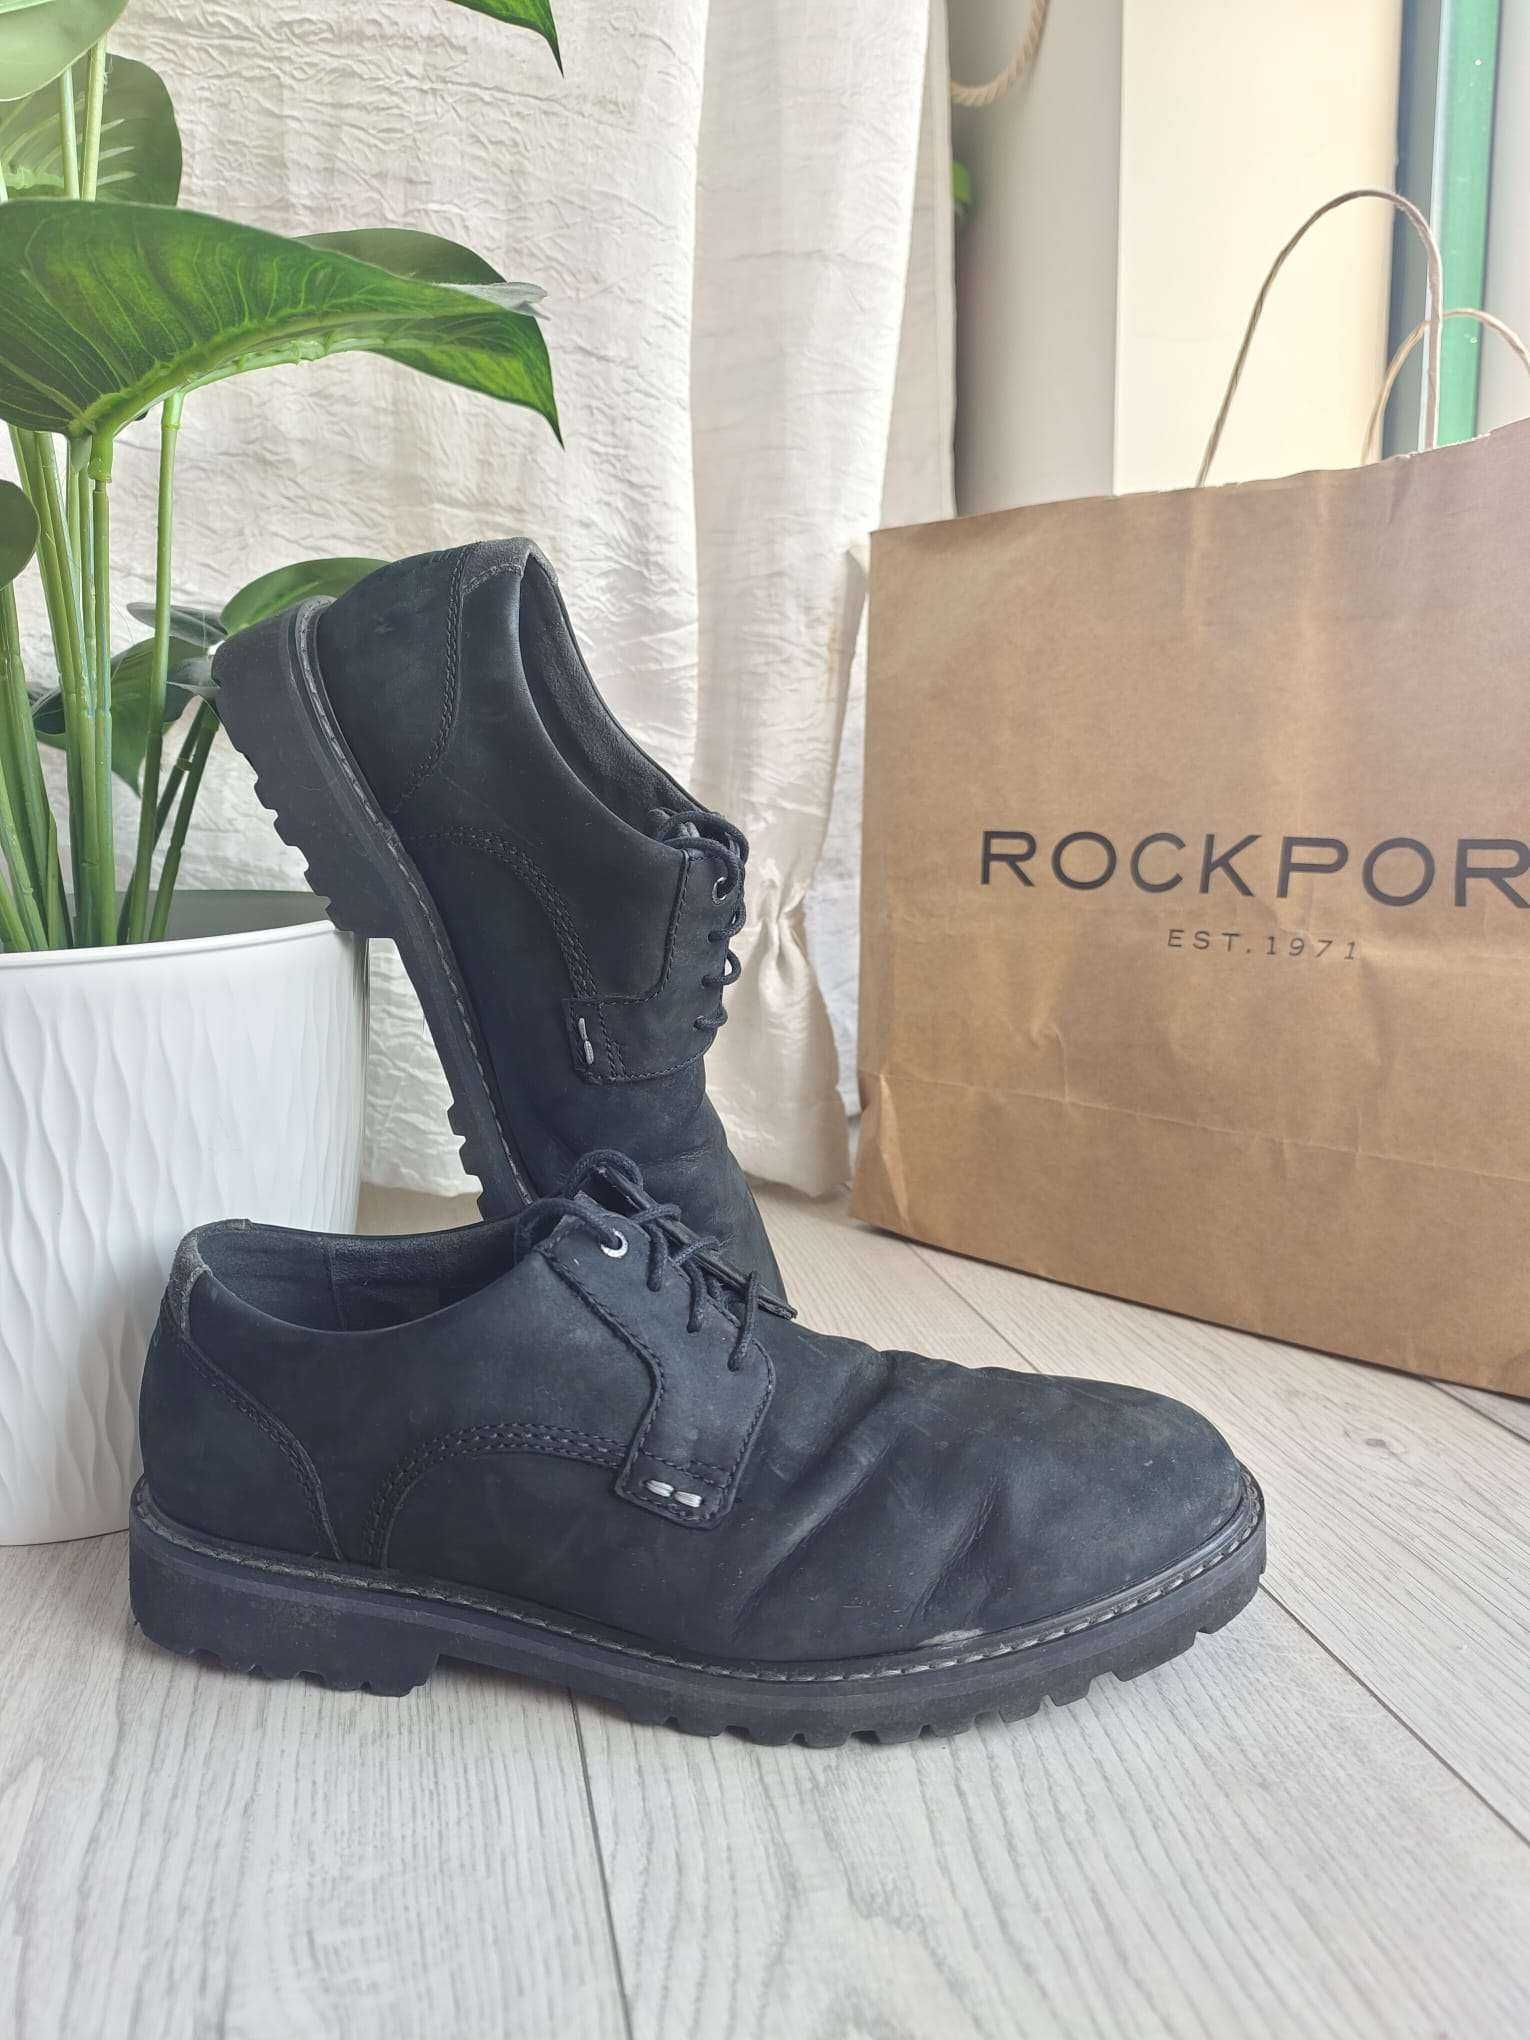 Sapatos Rockport Pretos